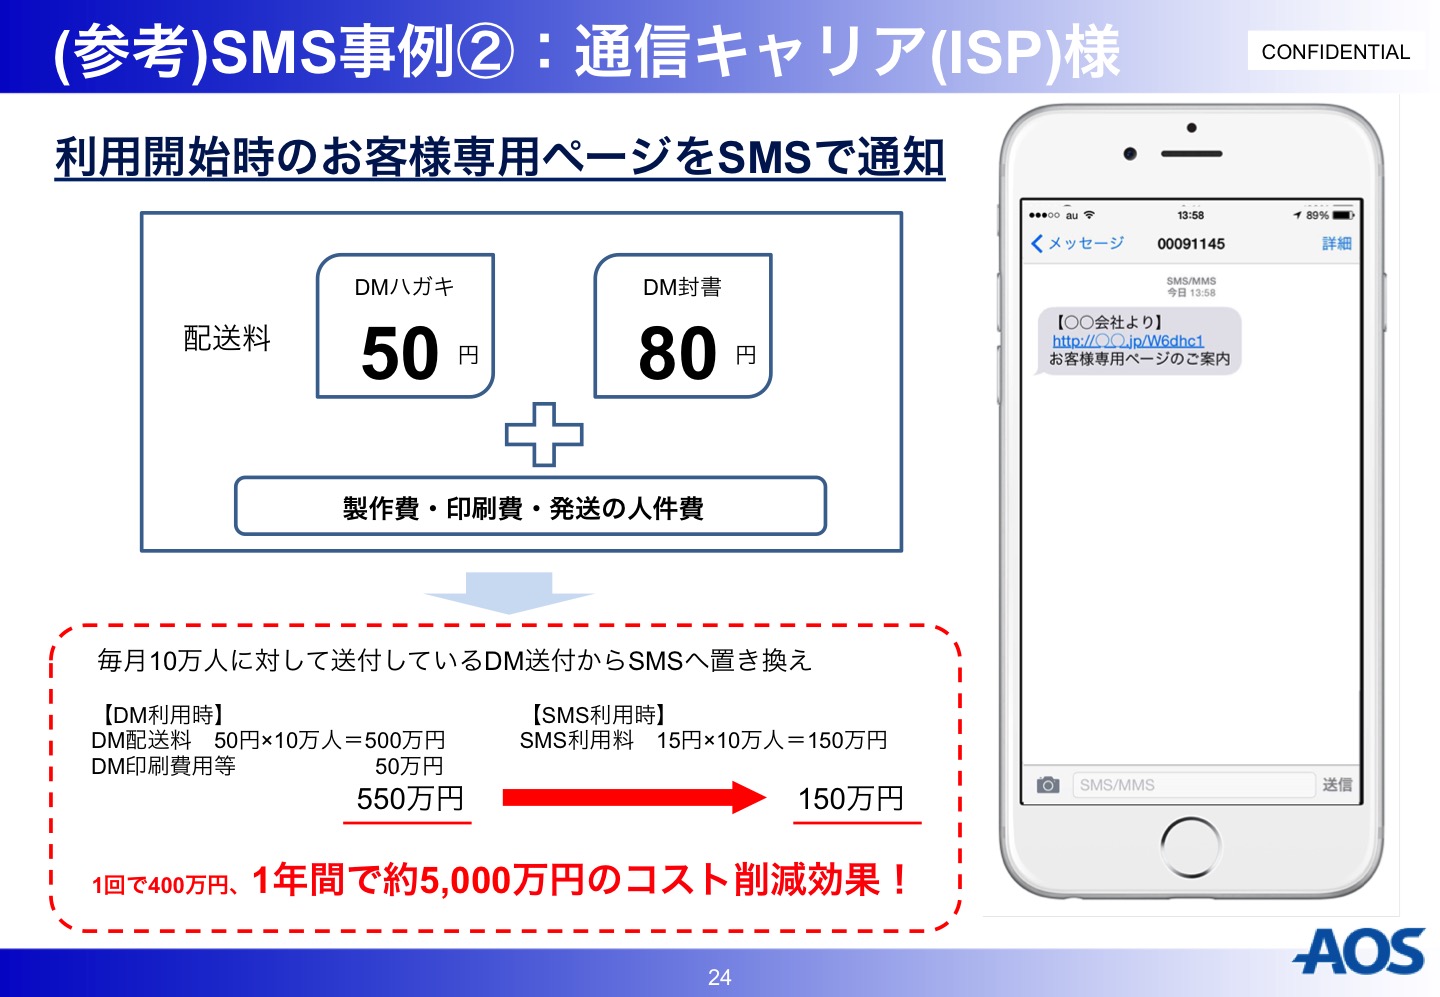 AOS SMS事例 通信キャリア